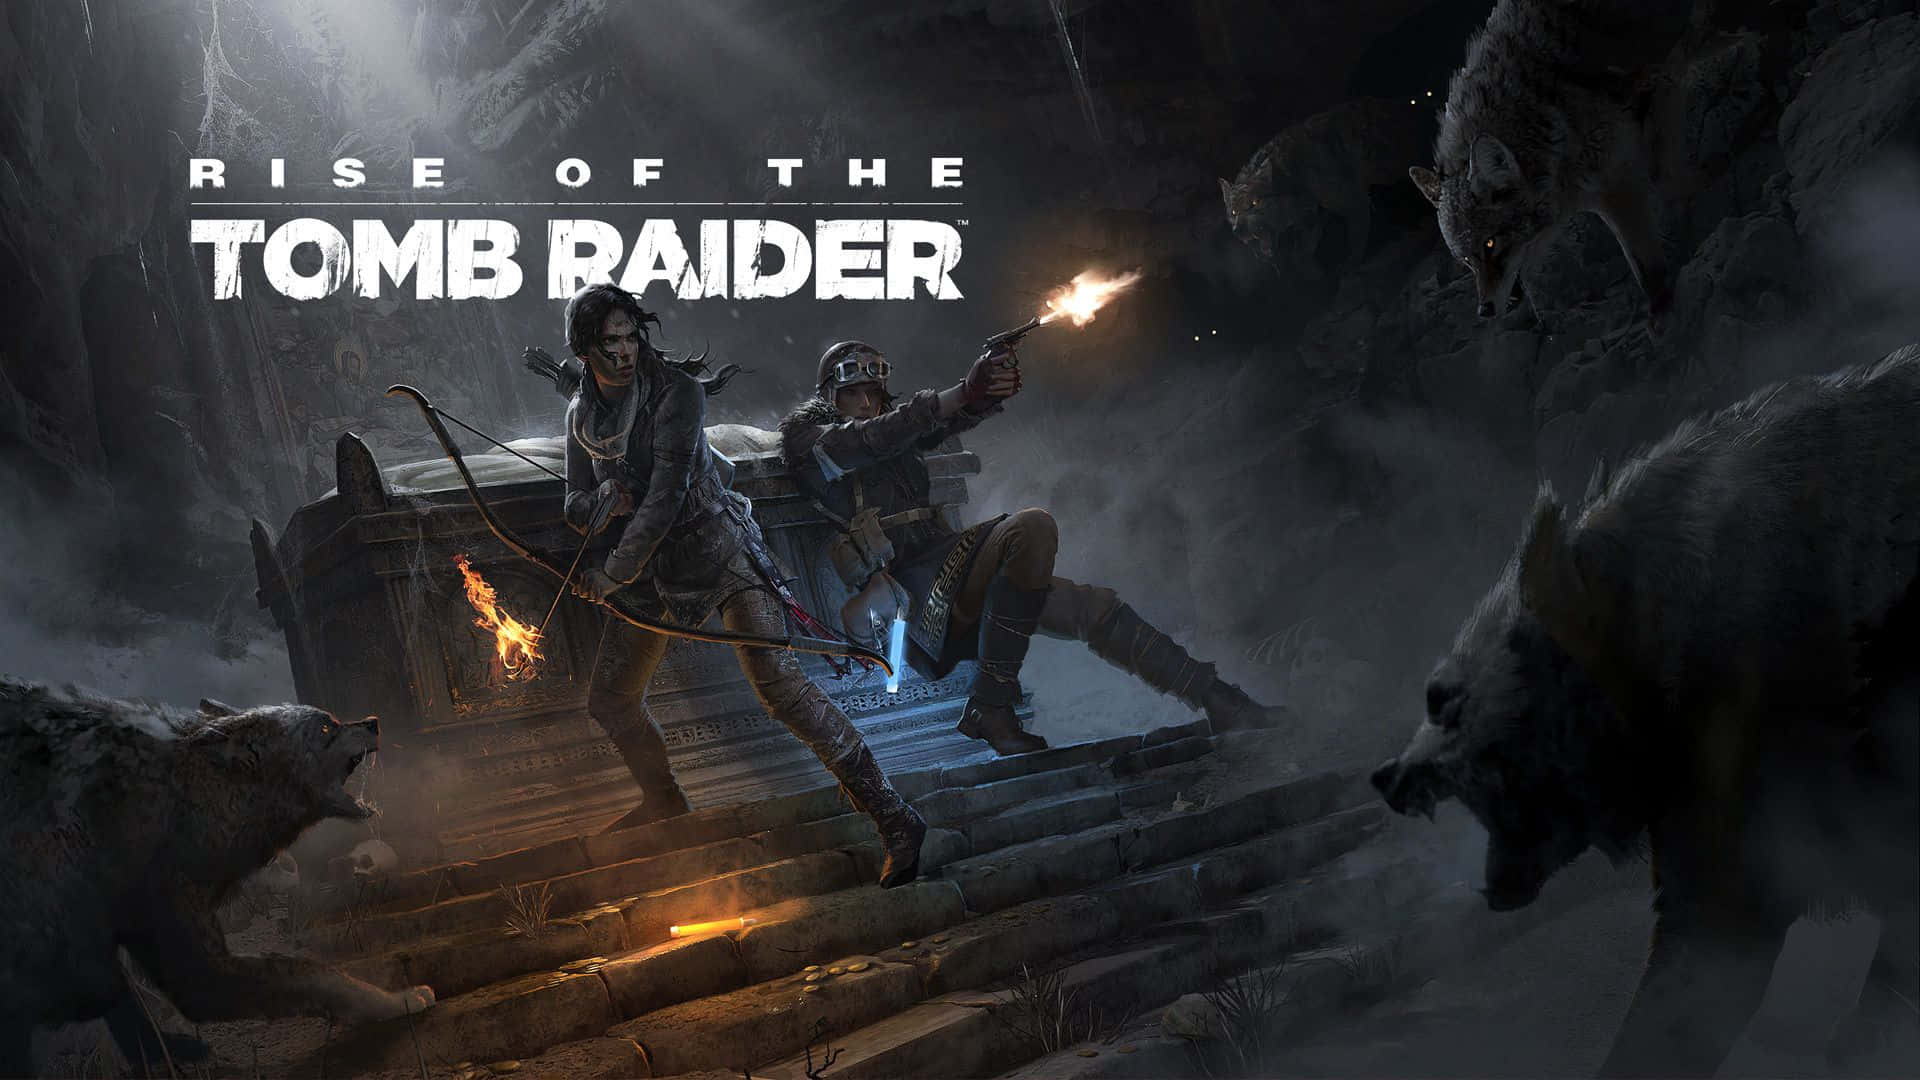 Uppstigningenav Tomb Raider - Pc Wallpaper